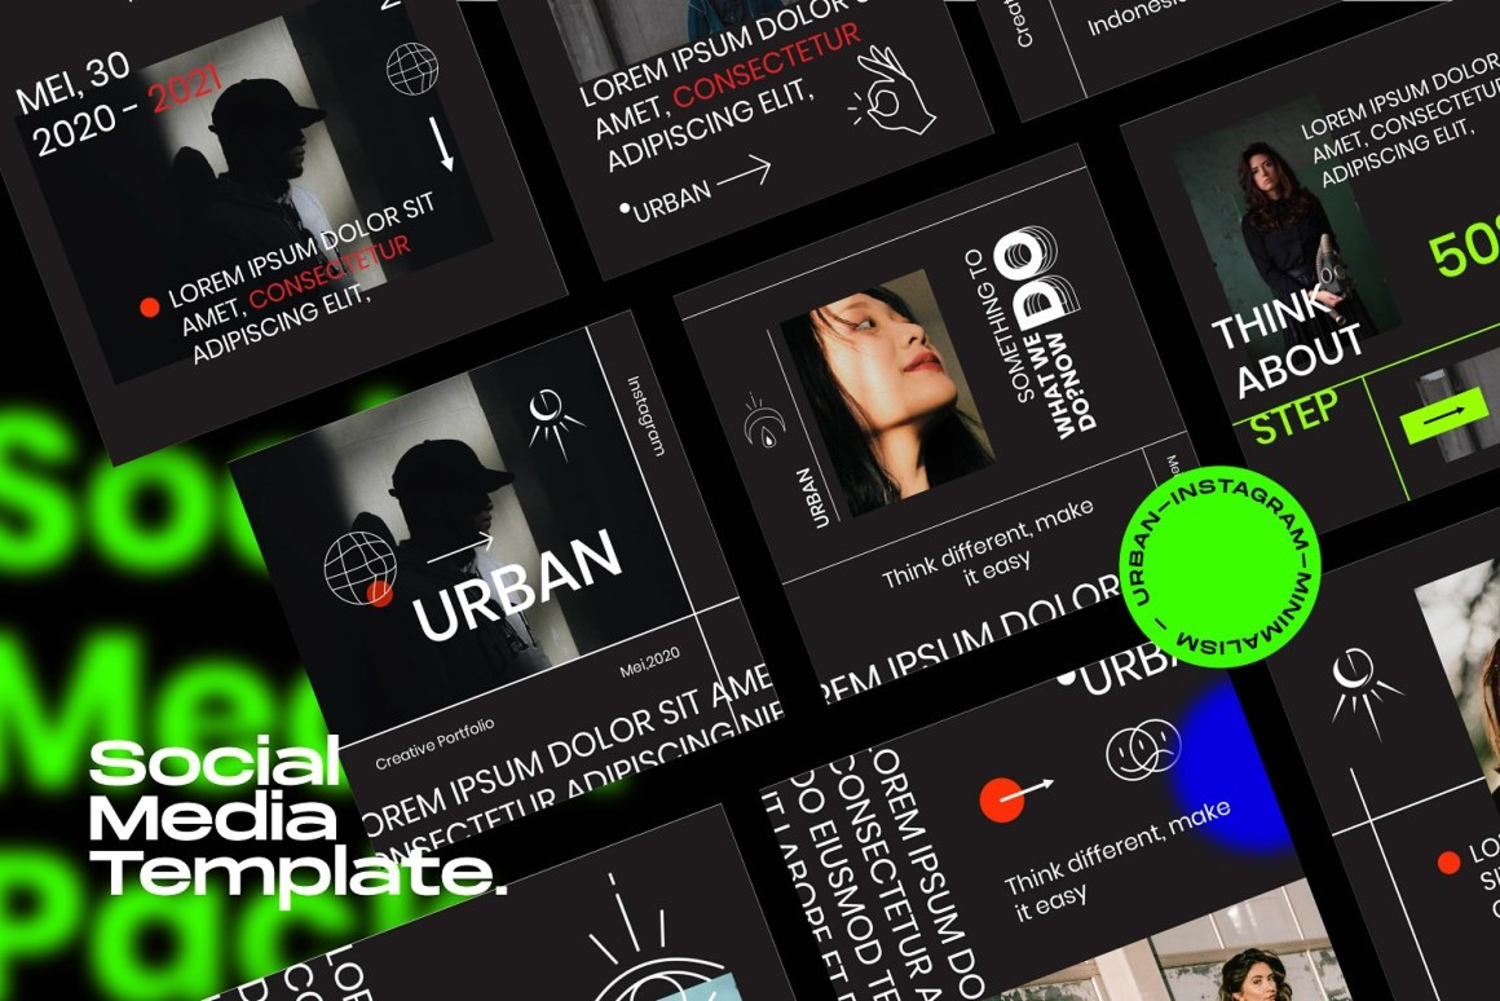 372 潮流黑色系品牌推广新媒体海报PSD模板 URBAN-Social Media Brand